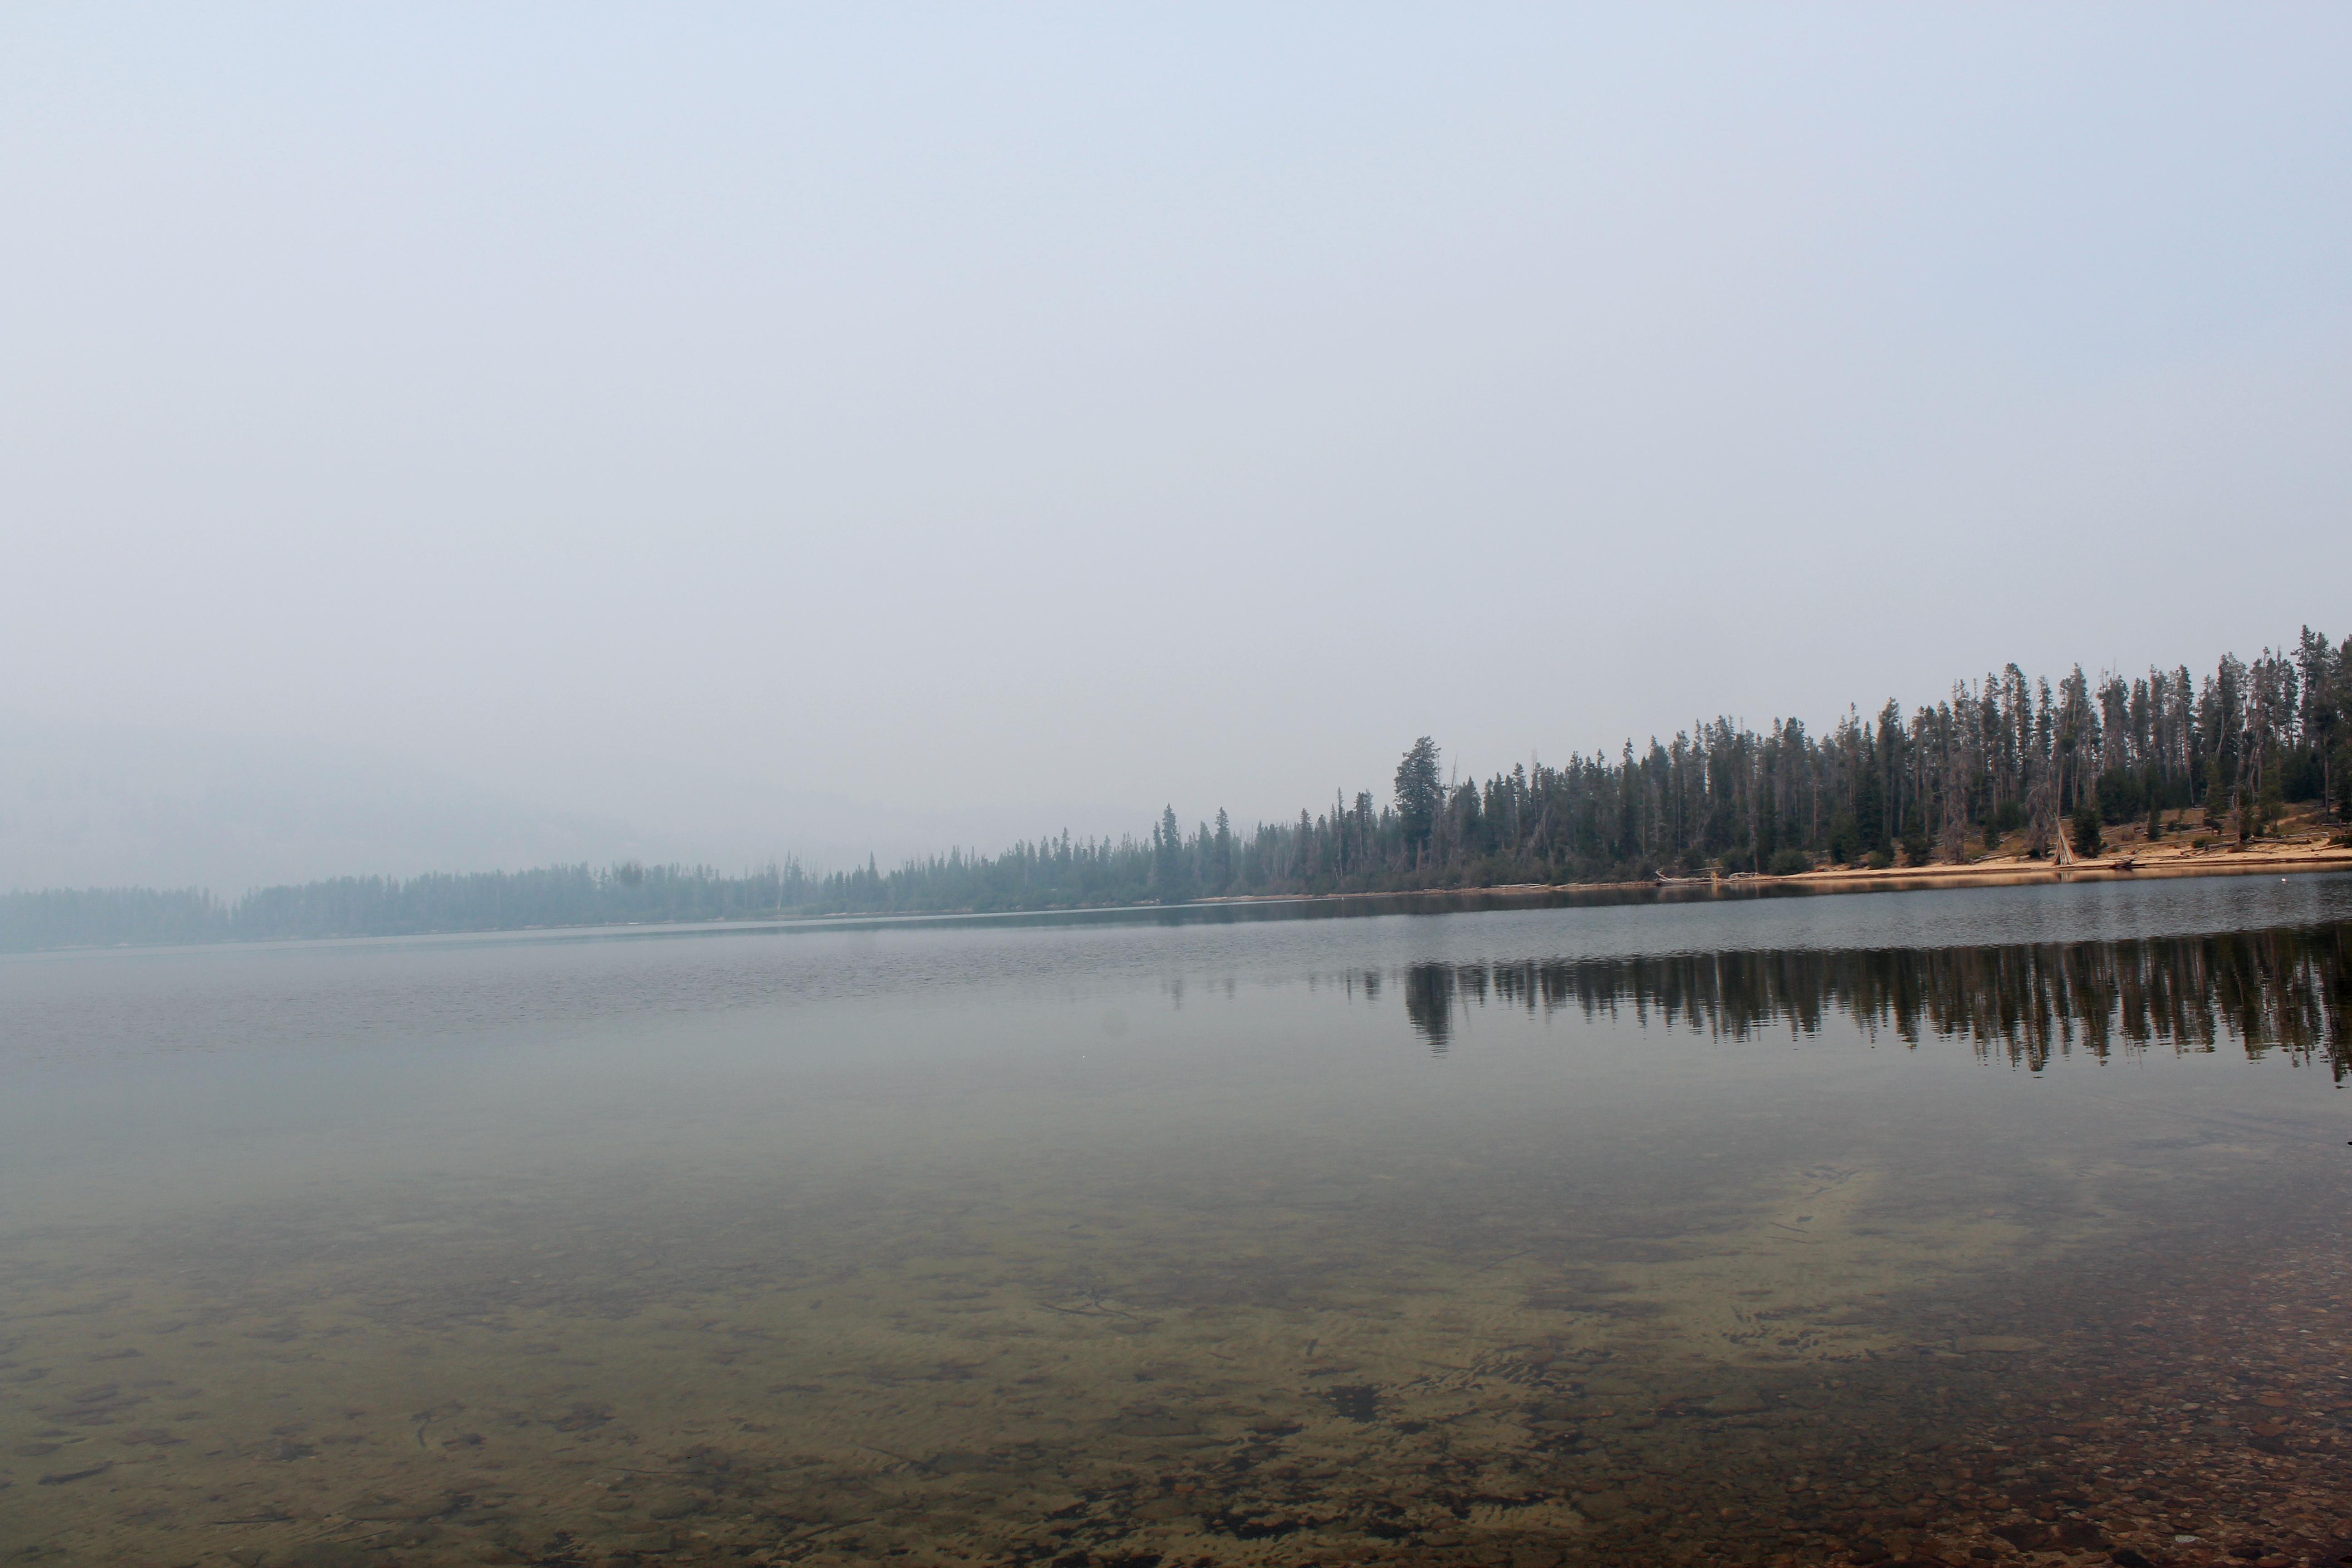 alturas lake and smoky sky, 9/12